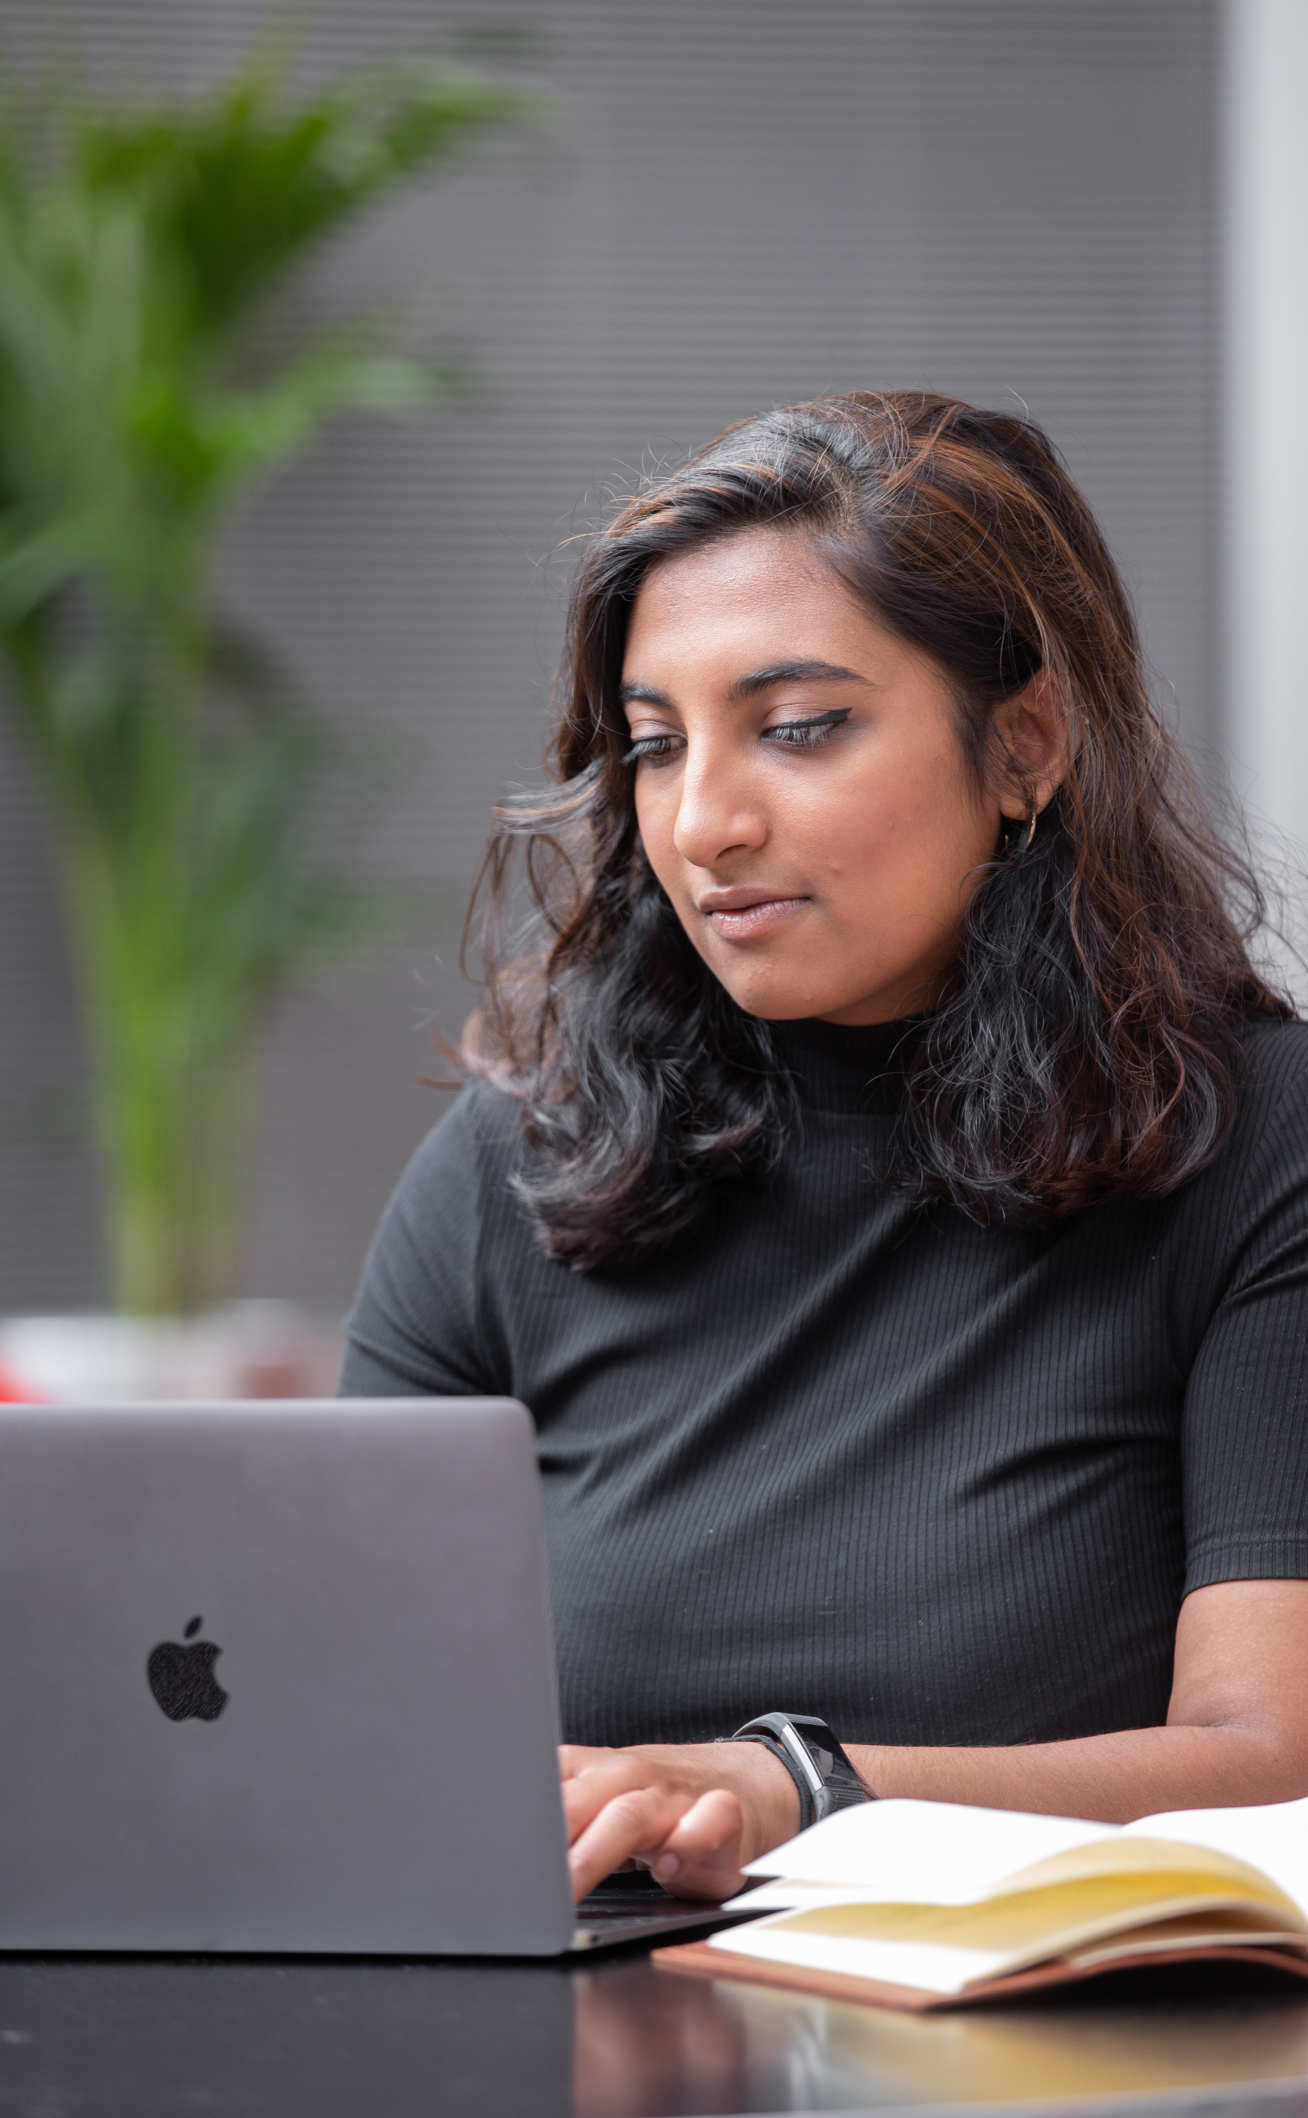 Anita Chandran sits at a laptop